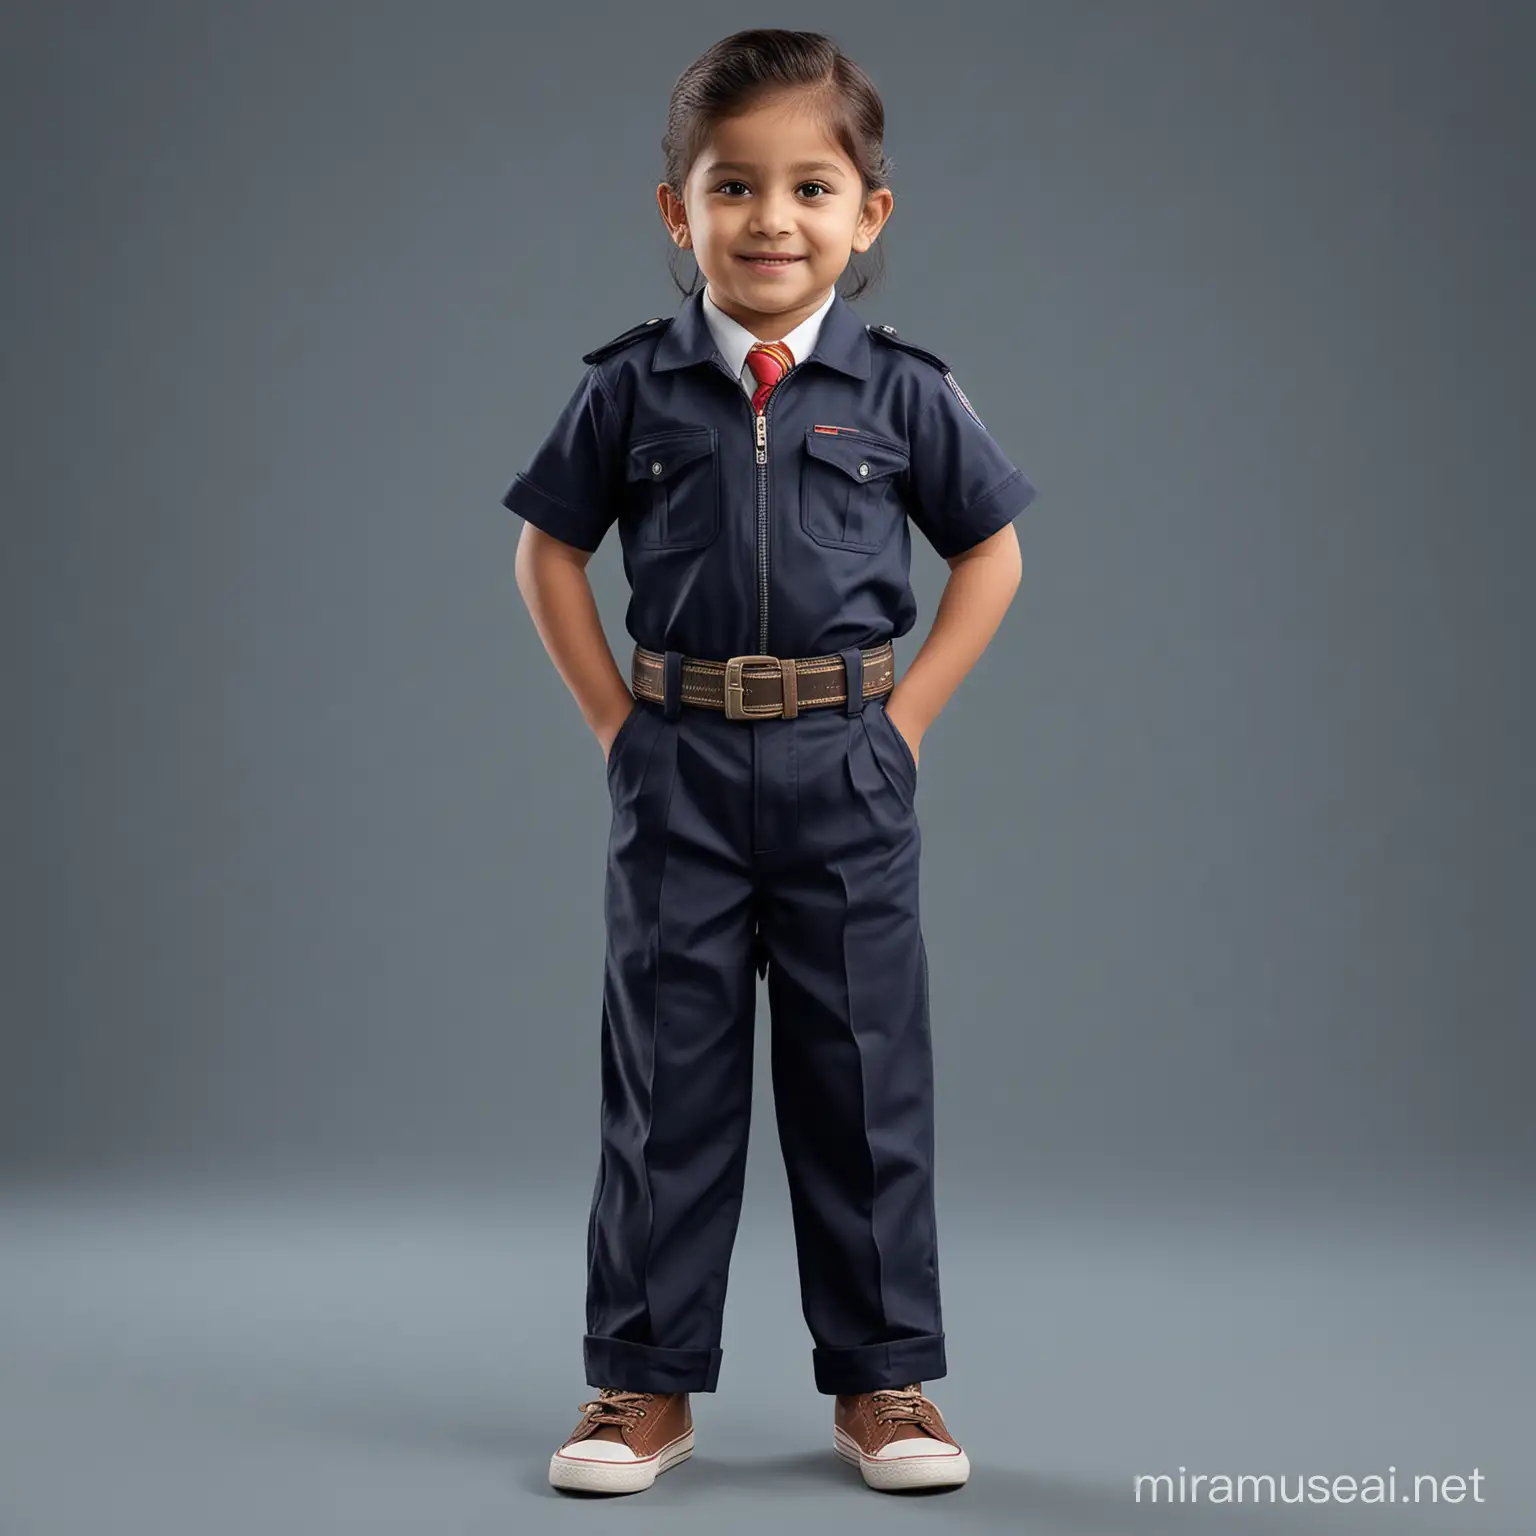 Indian Kindergarten Student in Navy Blue School Trousers